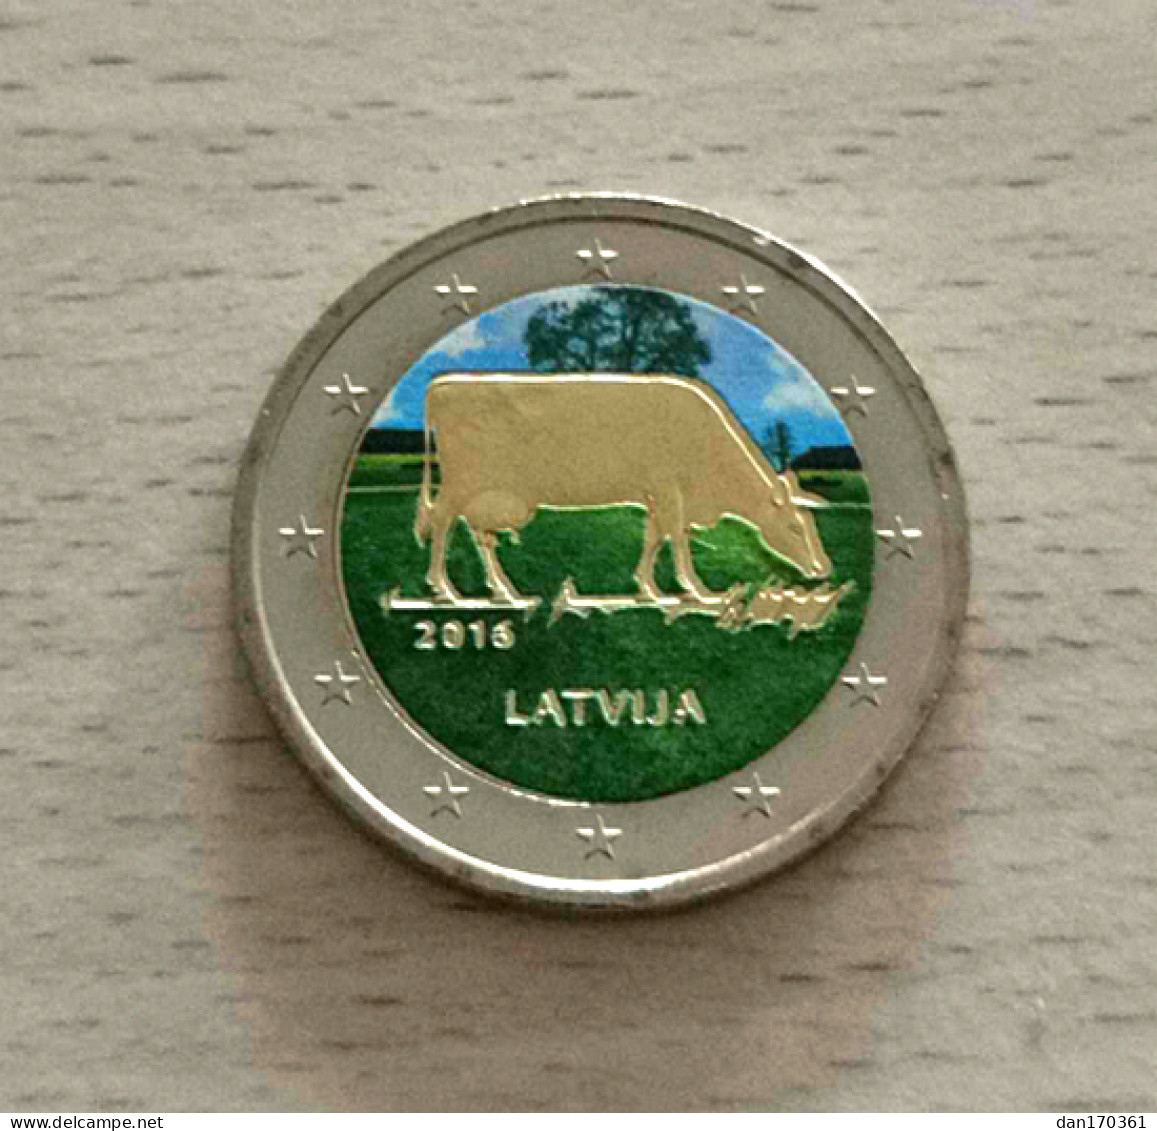 LETTONIE 2016 - INDUSTRIE LAITIERE VACHE BRUNE -  2 EURO COMMEMORATIVE - COULEUR - FARBE - COLORED - COLOR - COLORISEE - Letland